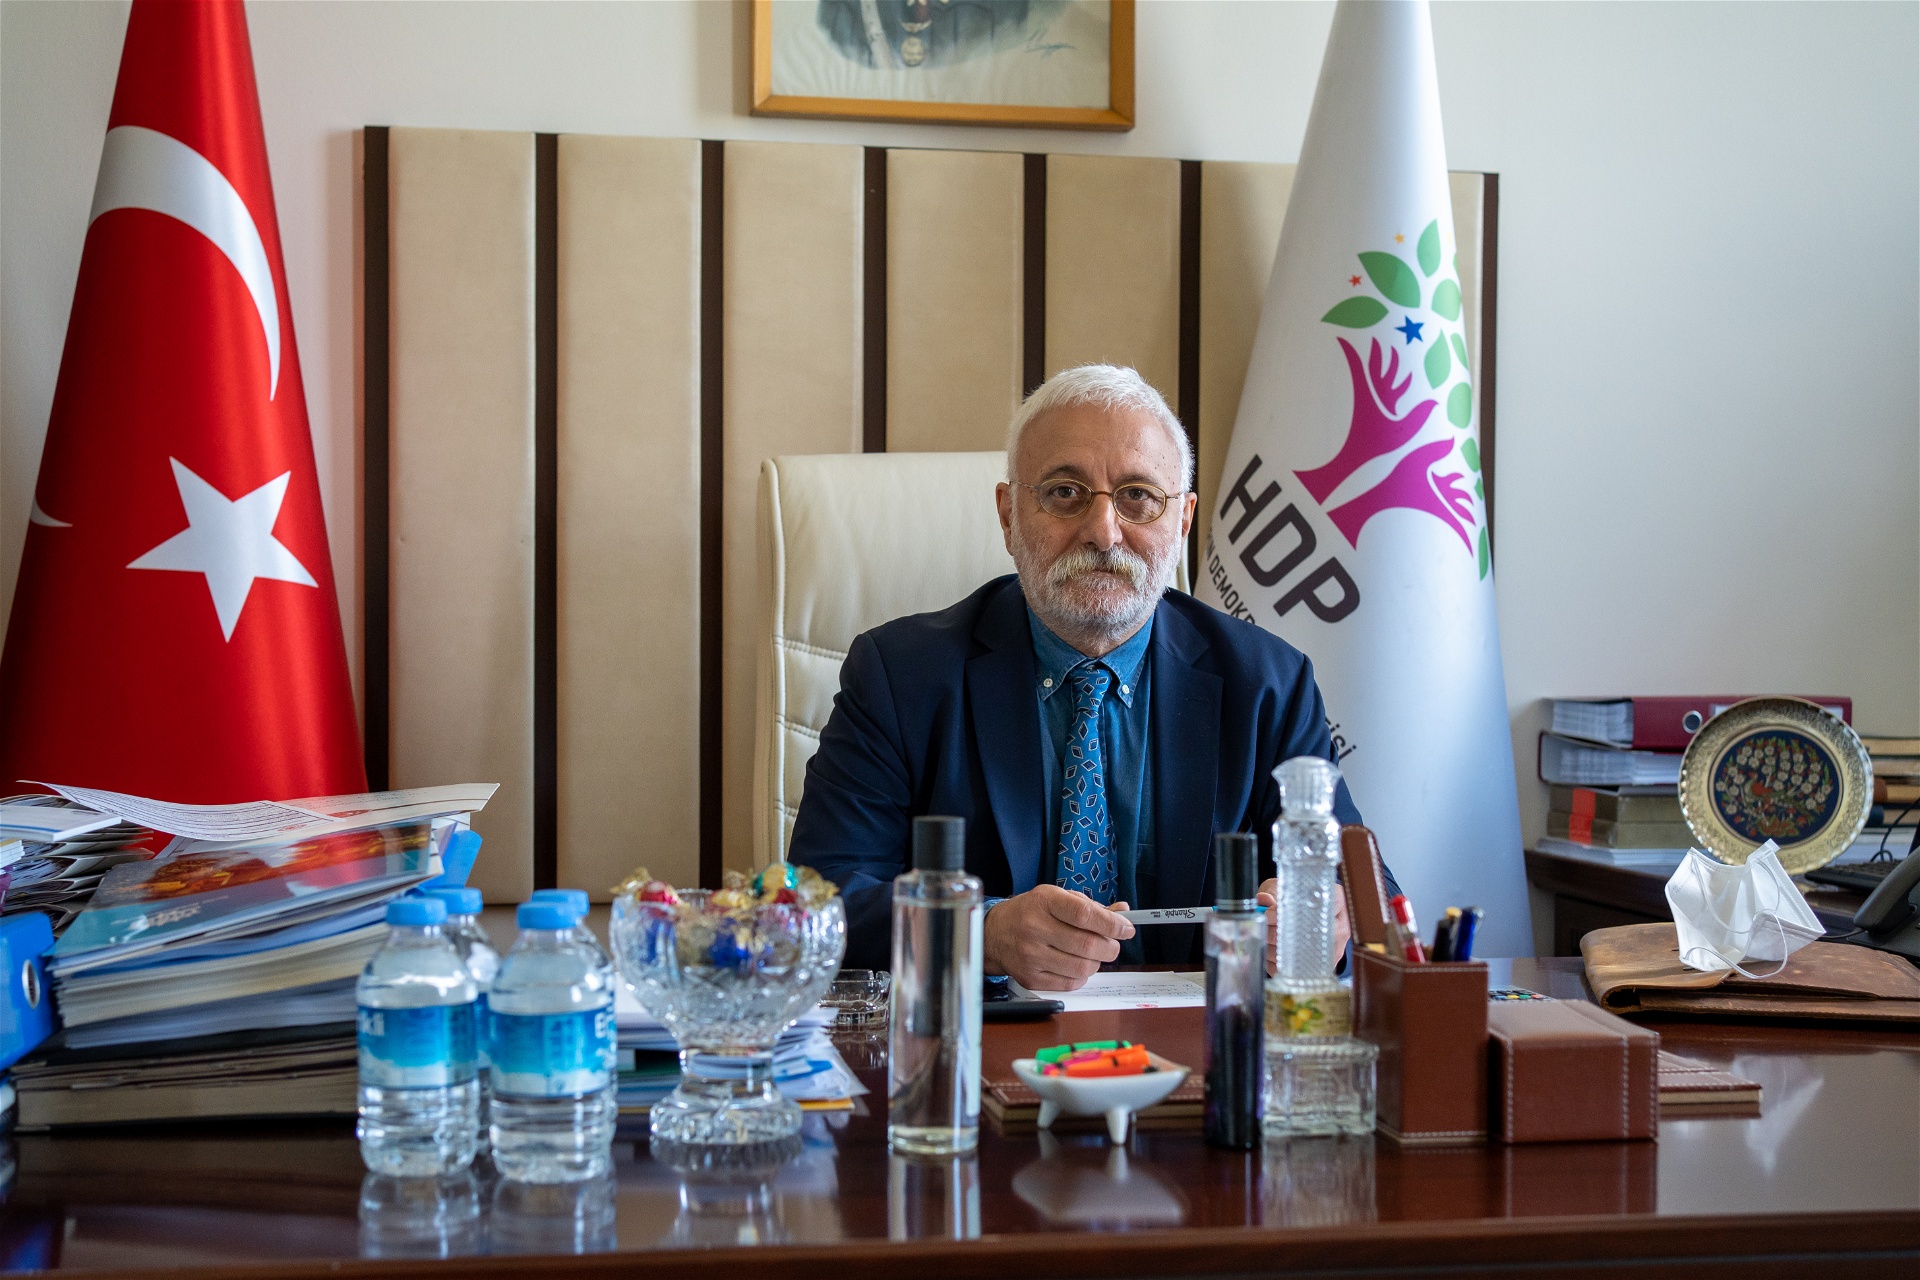 Saruhan Oluç, talesperson för det prokurdiska HDP. Foto: Joakim Medin